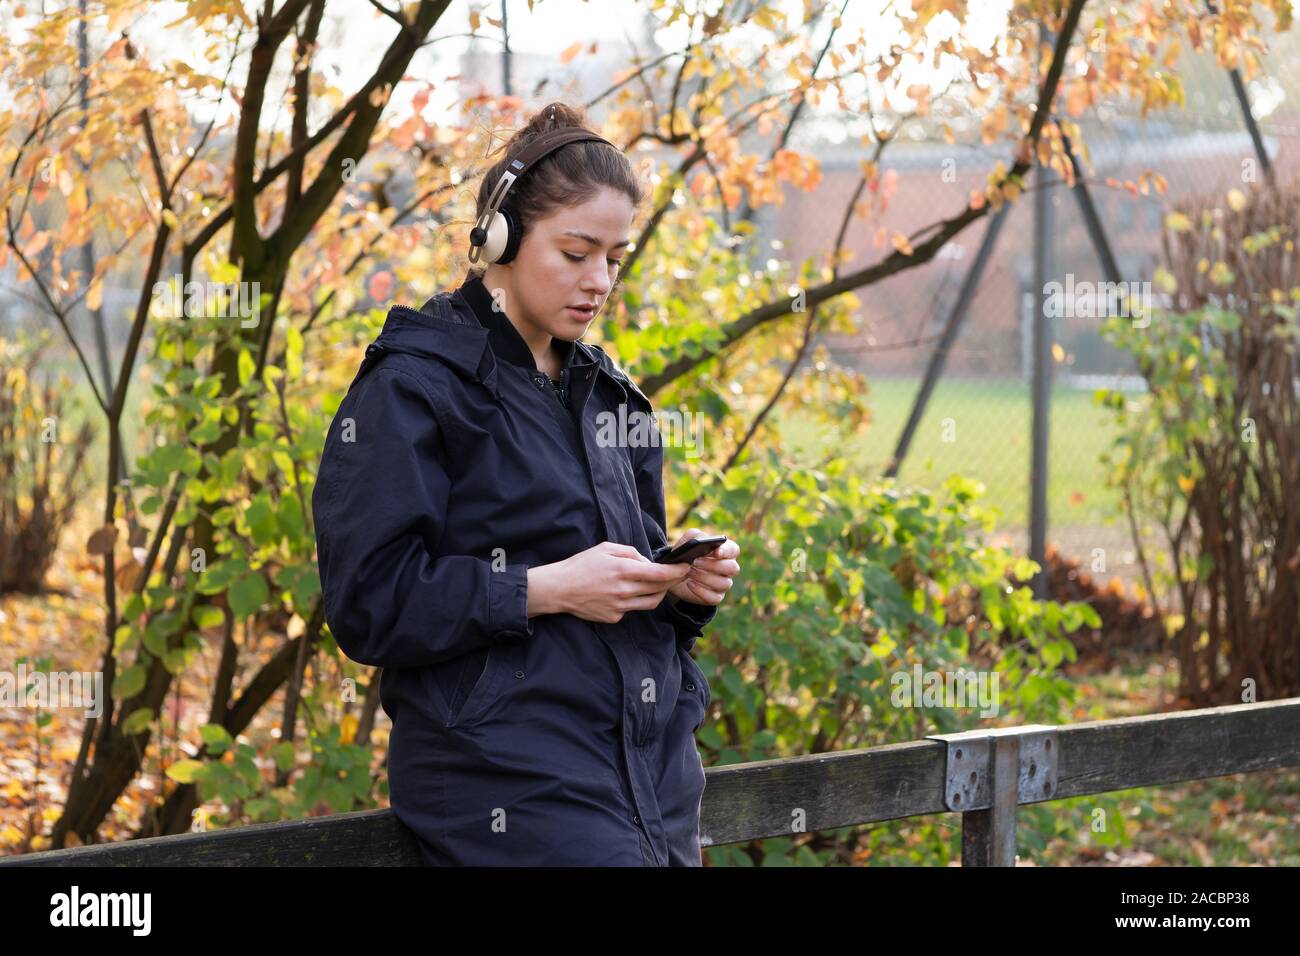 Junge Frau in ihrem 20s Abspielen von Musik mit drahtlosen Bluetooth® Kopfhörer und smart phone - candid urbanen Lebensstil im Freien im Herbst - mit Kopie Raum Stockfoto